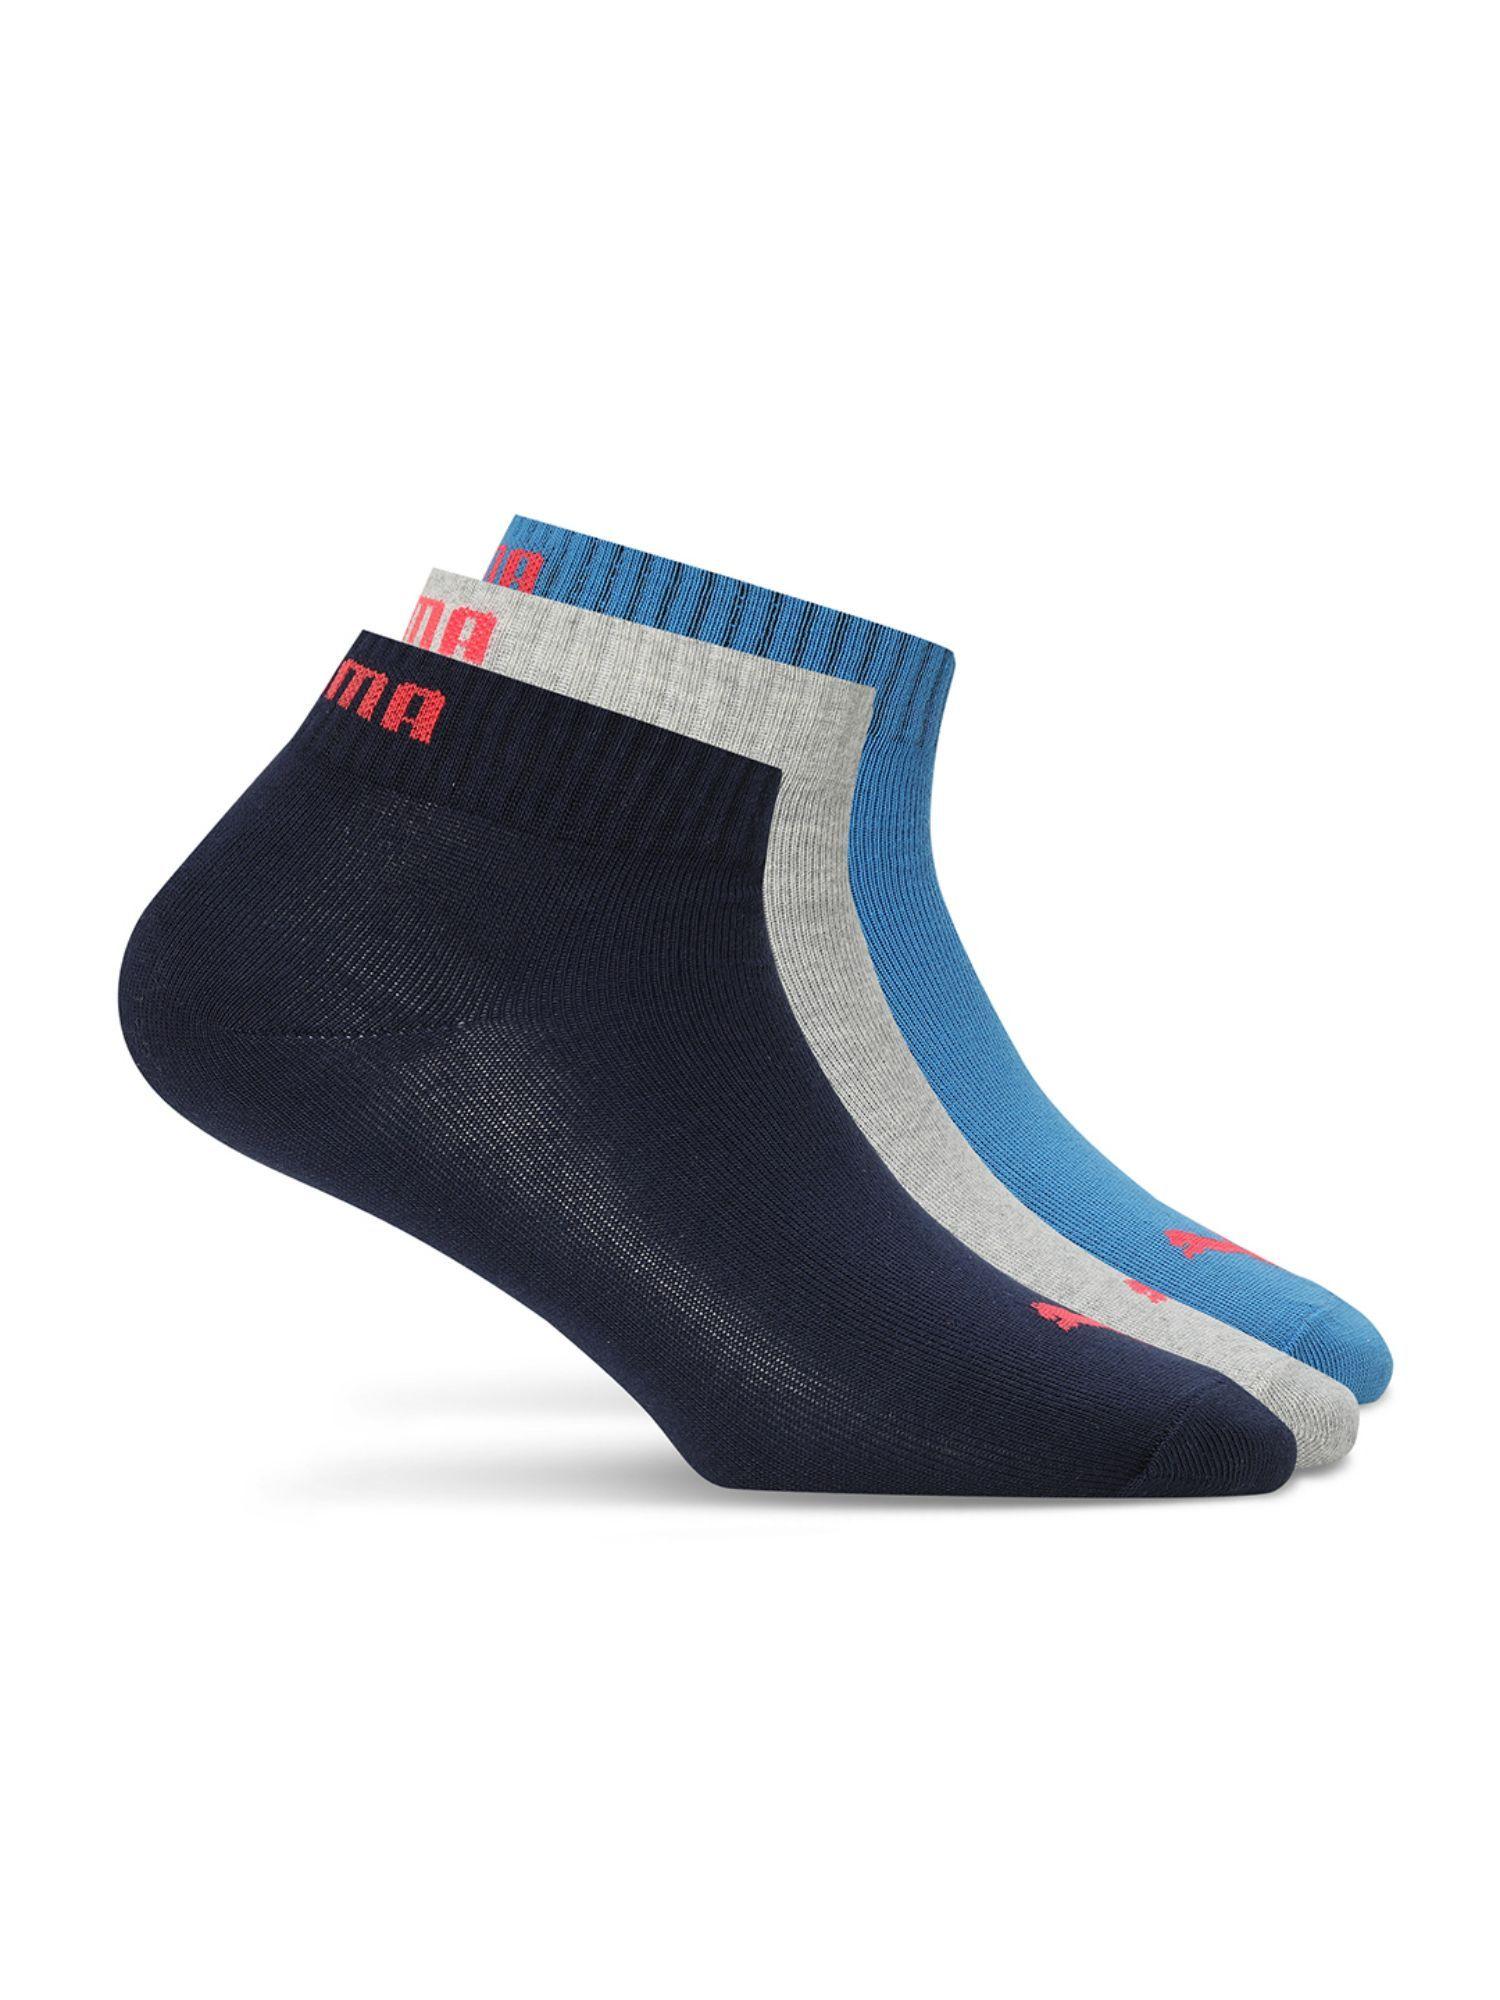 quarter-plain-unisex-multi-color-socks-(pack-of-3)